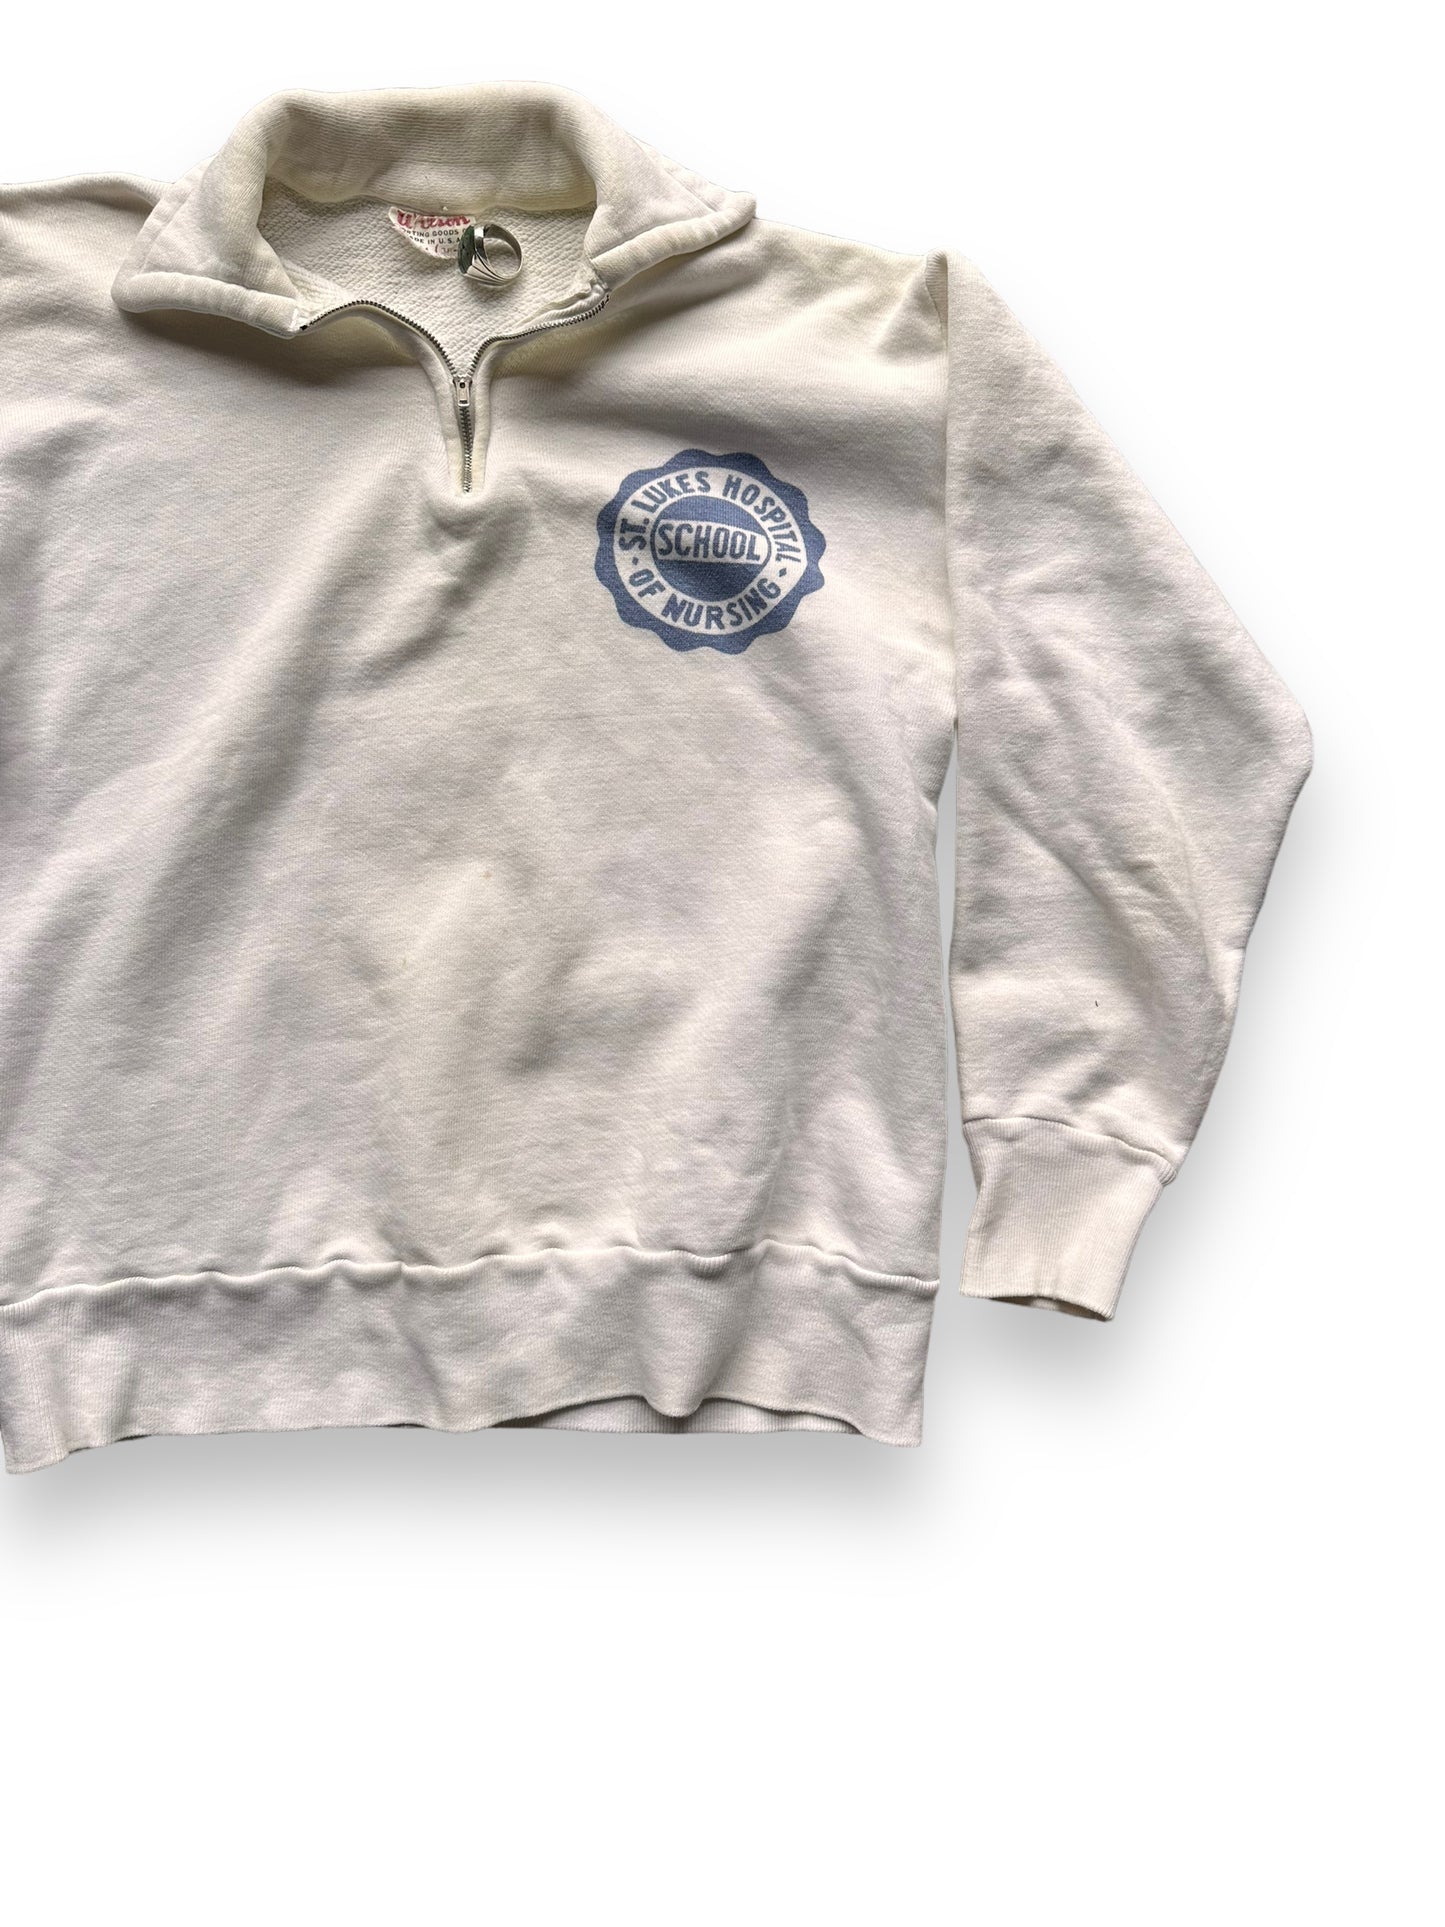 Front Left View of Vintage Wilson Sportswear Sweatshirt SZ M | Vintage Sweatshirt Seattle | Barn Owl Vintage Seattle